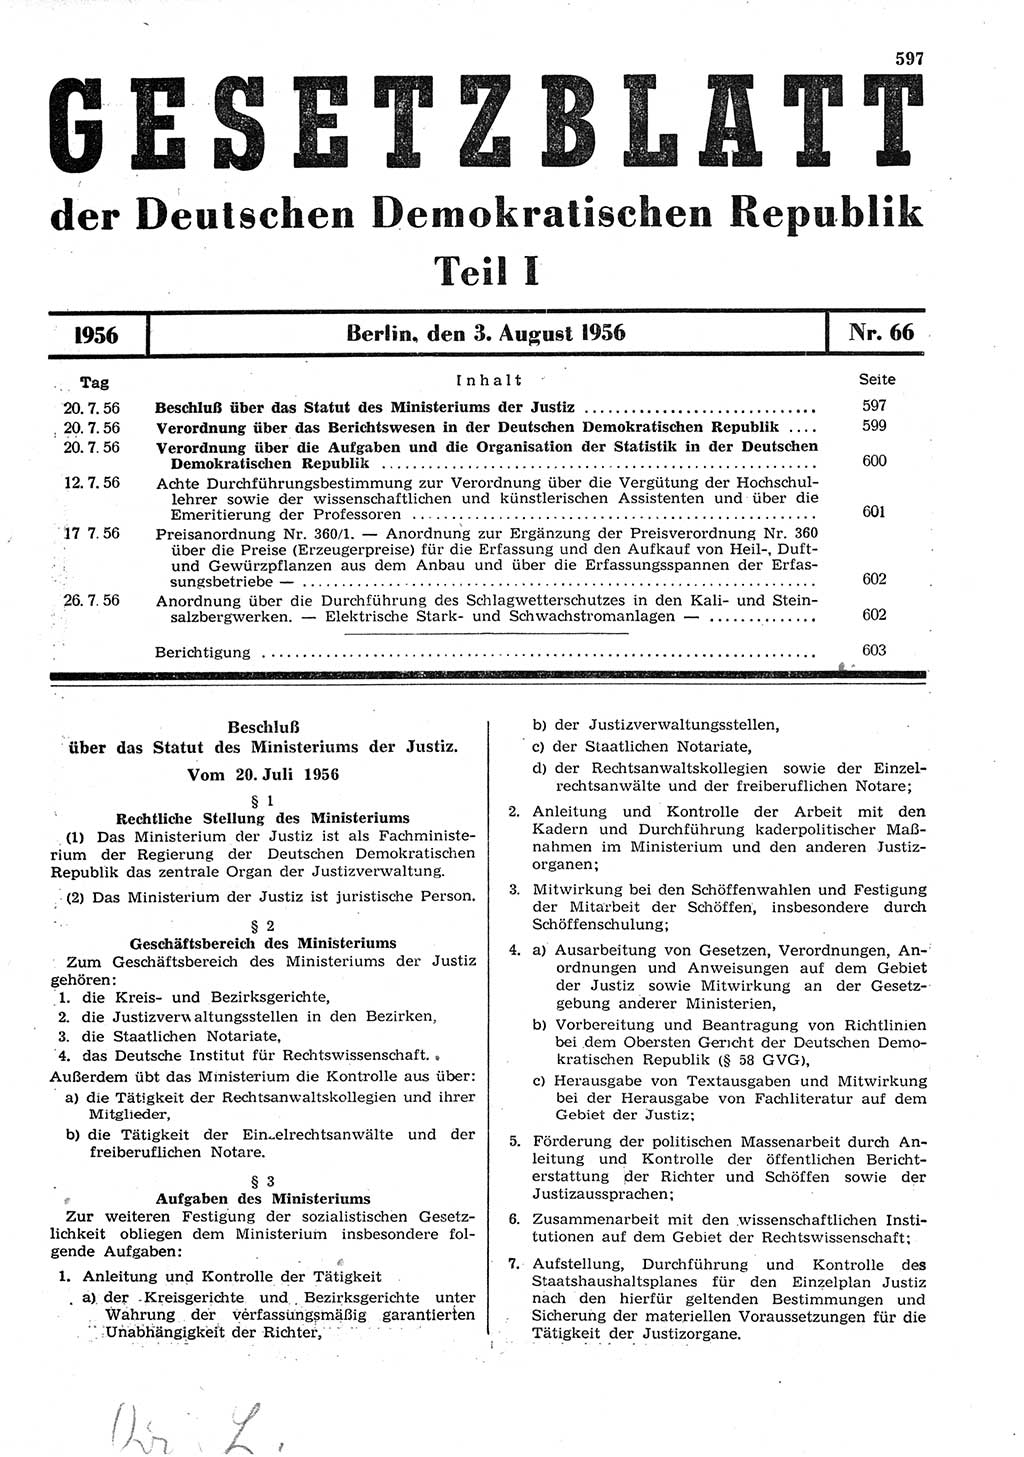 Gesetzblatt (GBl.) der Deutschen Demokratischen Republik (DDR) Teil Ⅰ 1956, Seite 597 (GBl. DDR Ⅰ 1956, S. 597)